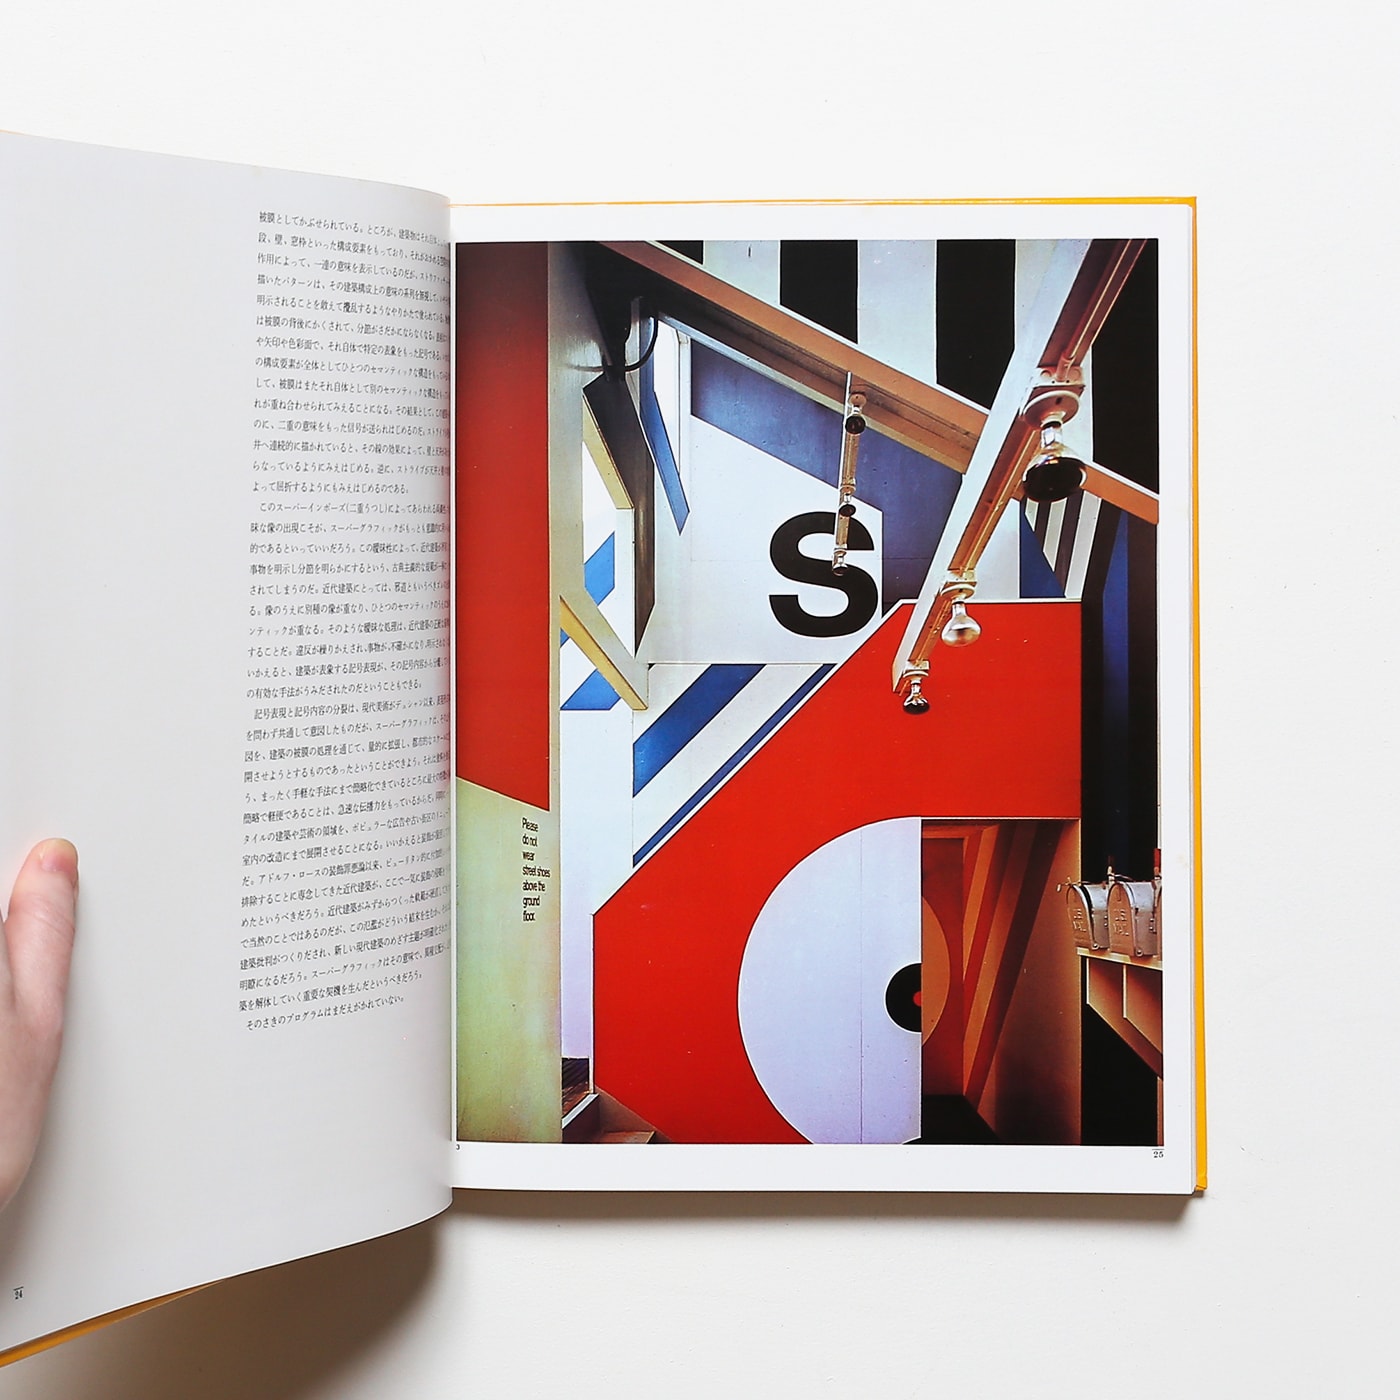 世界のグラフィックデザイン 全7巻 講談社 - アート、エンターテインメント